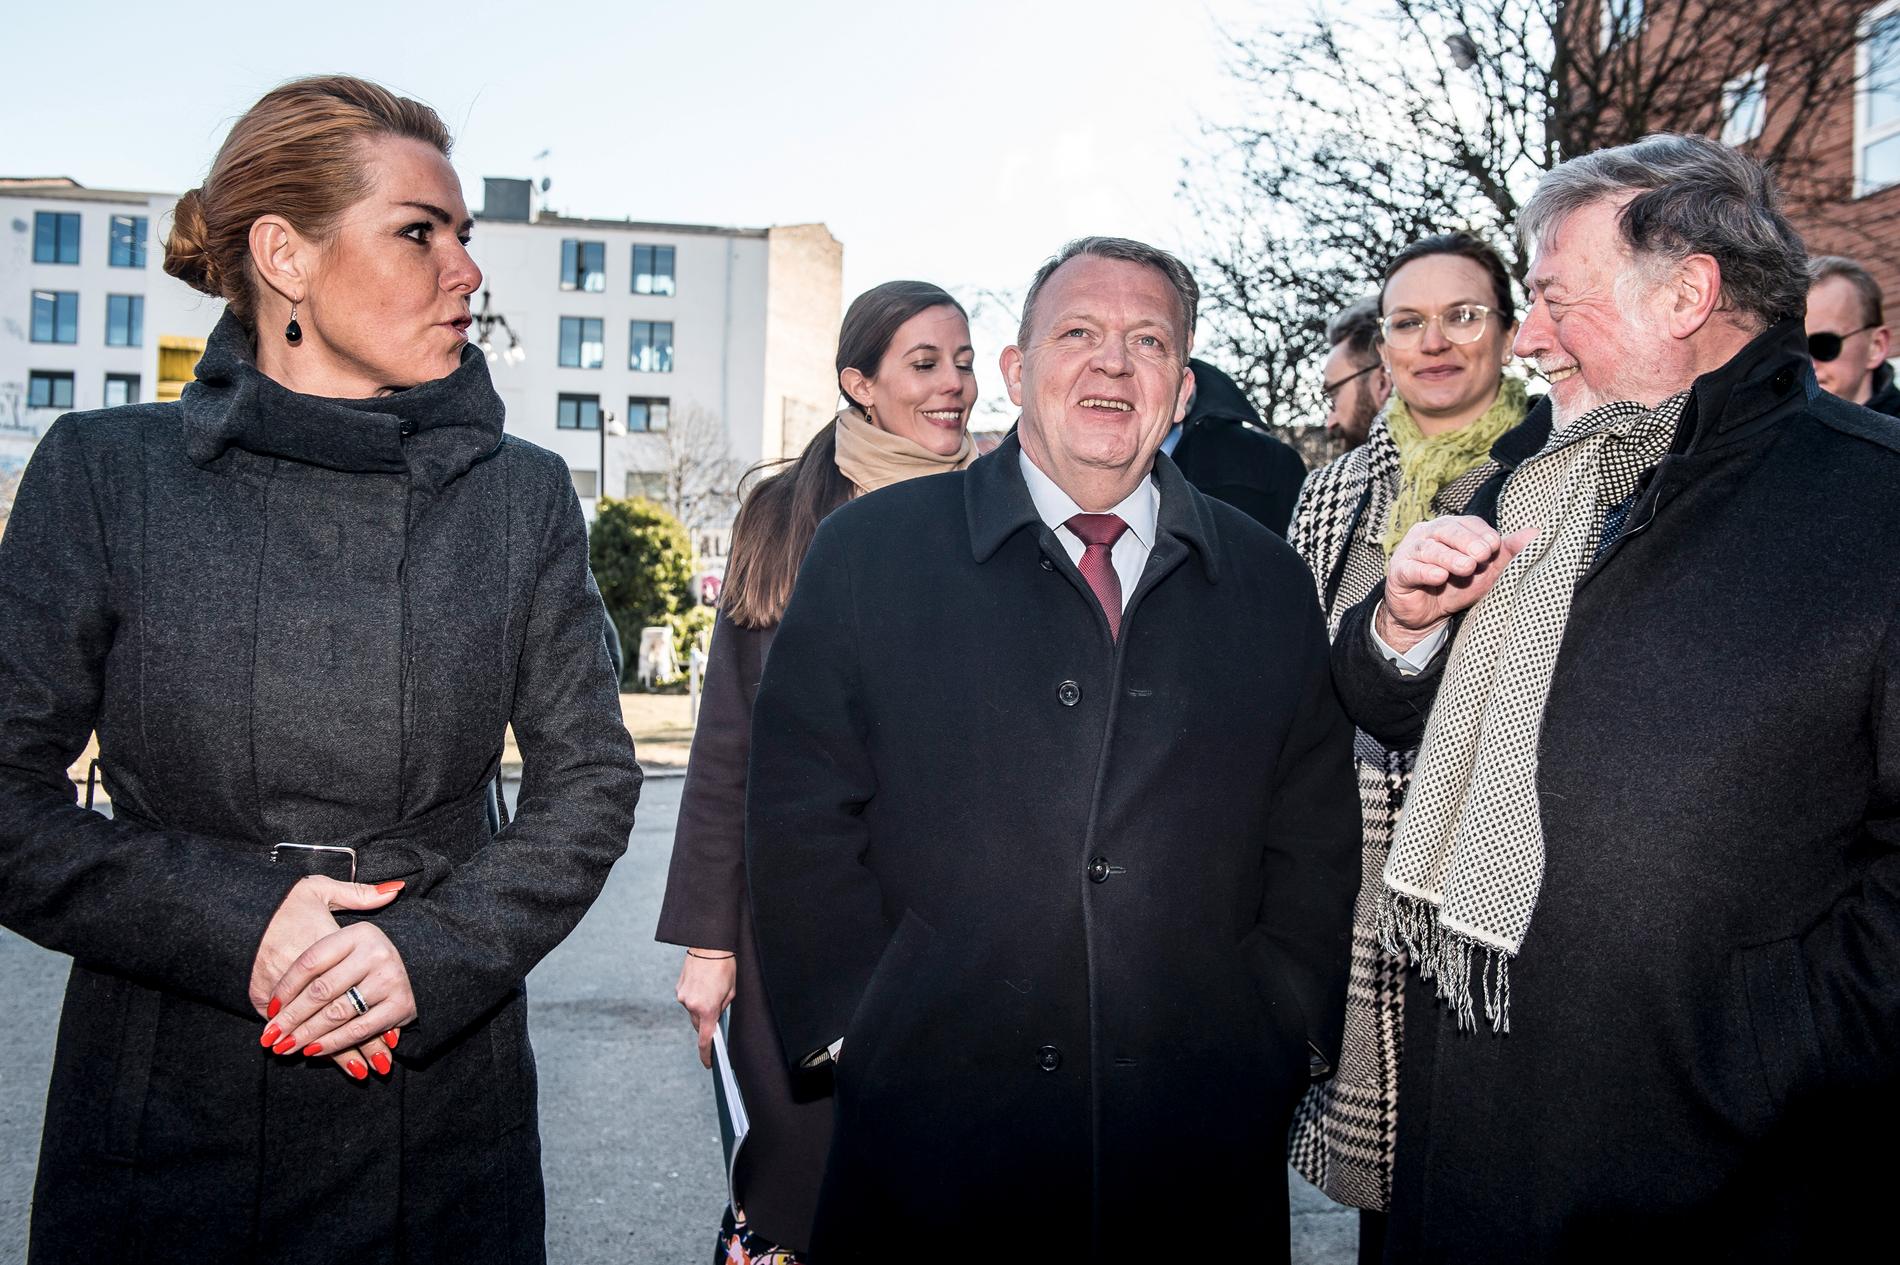 Röstmagneterna Inger Støjberg och Lars Løkke Rasmussen (i mitten), numera politisk vilde, har varit så dominerande att Venstres partiledare Jakob Ellemann-Jensen har framstått som osynlig. Arkivbild.